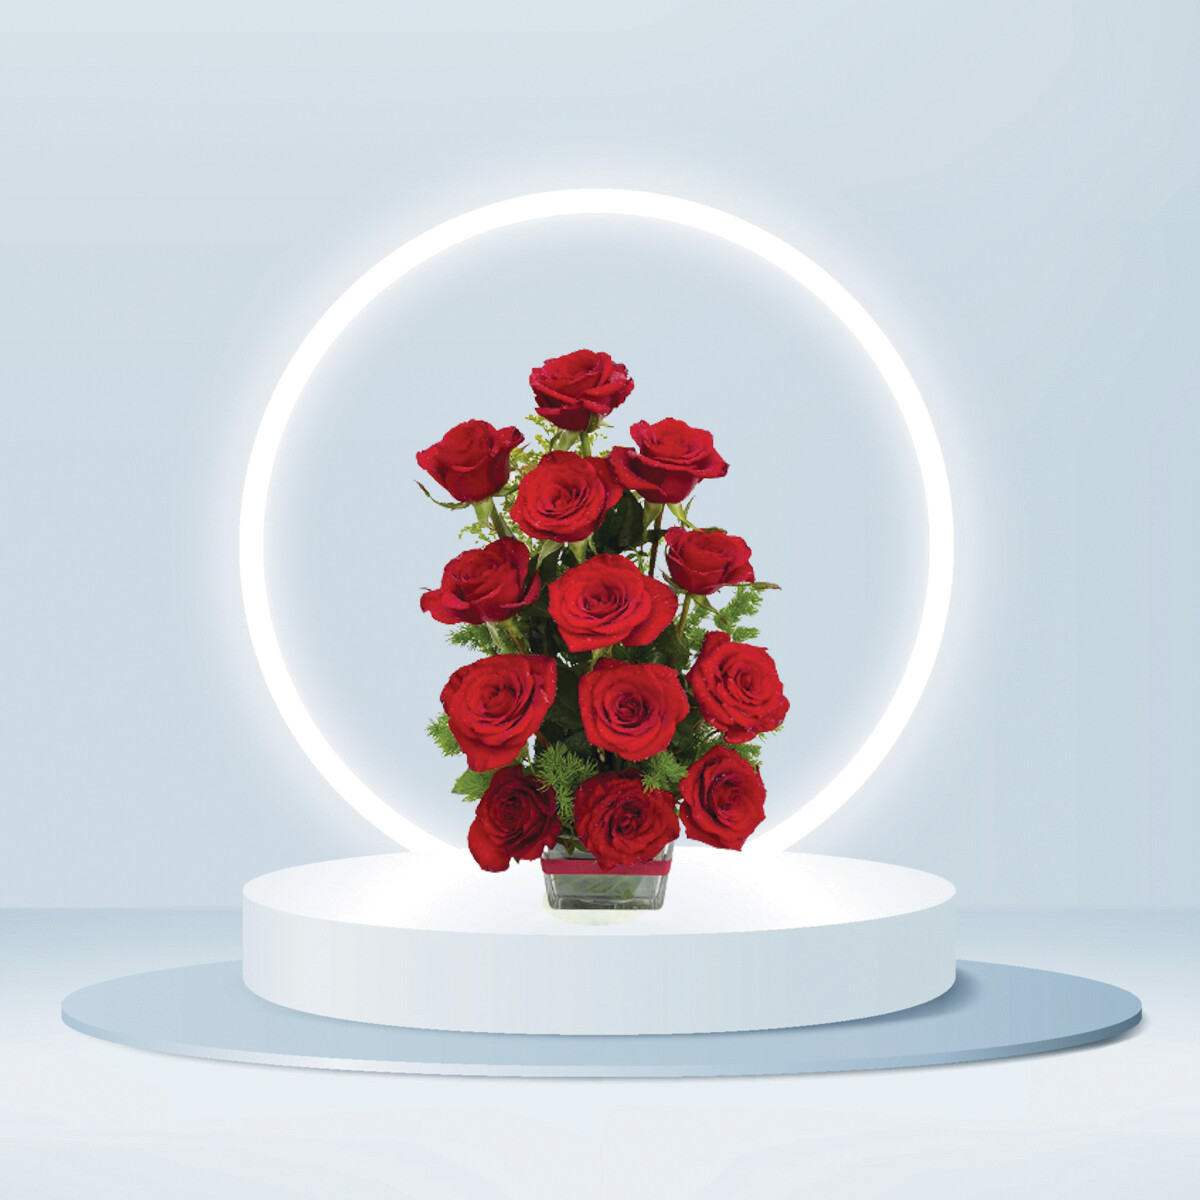 12 Red roses in vase